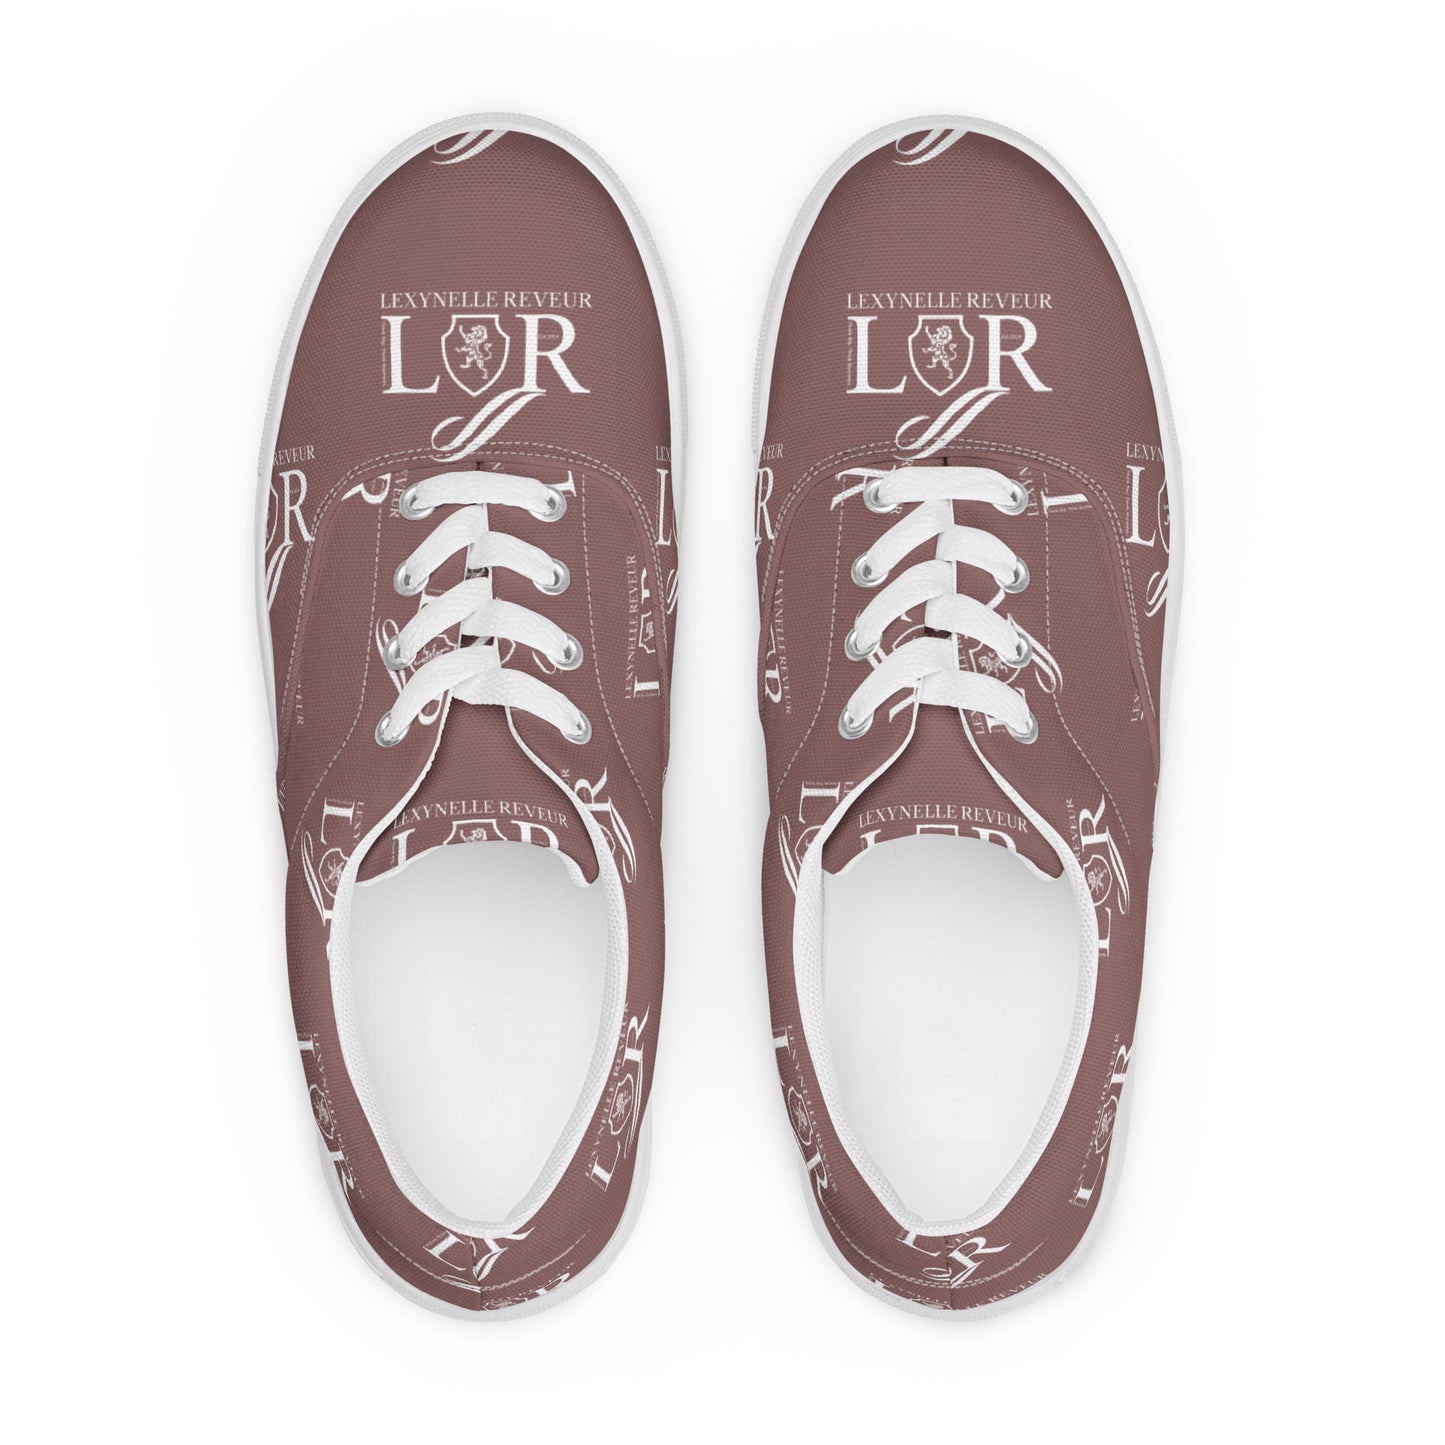 Lexynelle Reveur Lace-up Canvas shoes